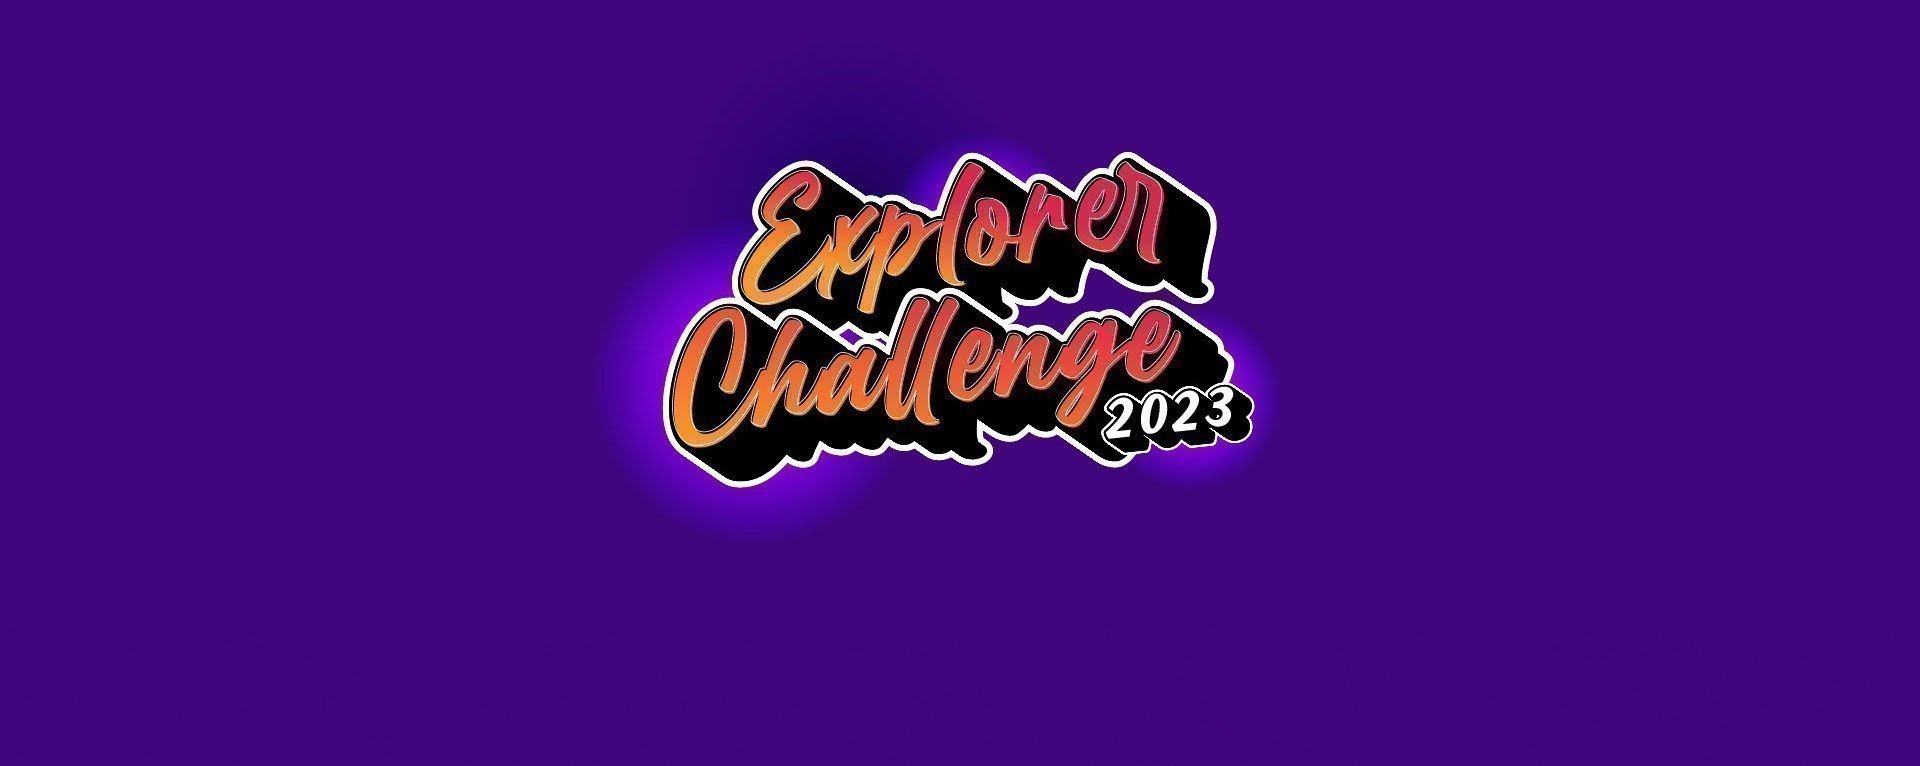 Explorer Challenge Business 21 de octubre 2023